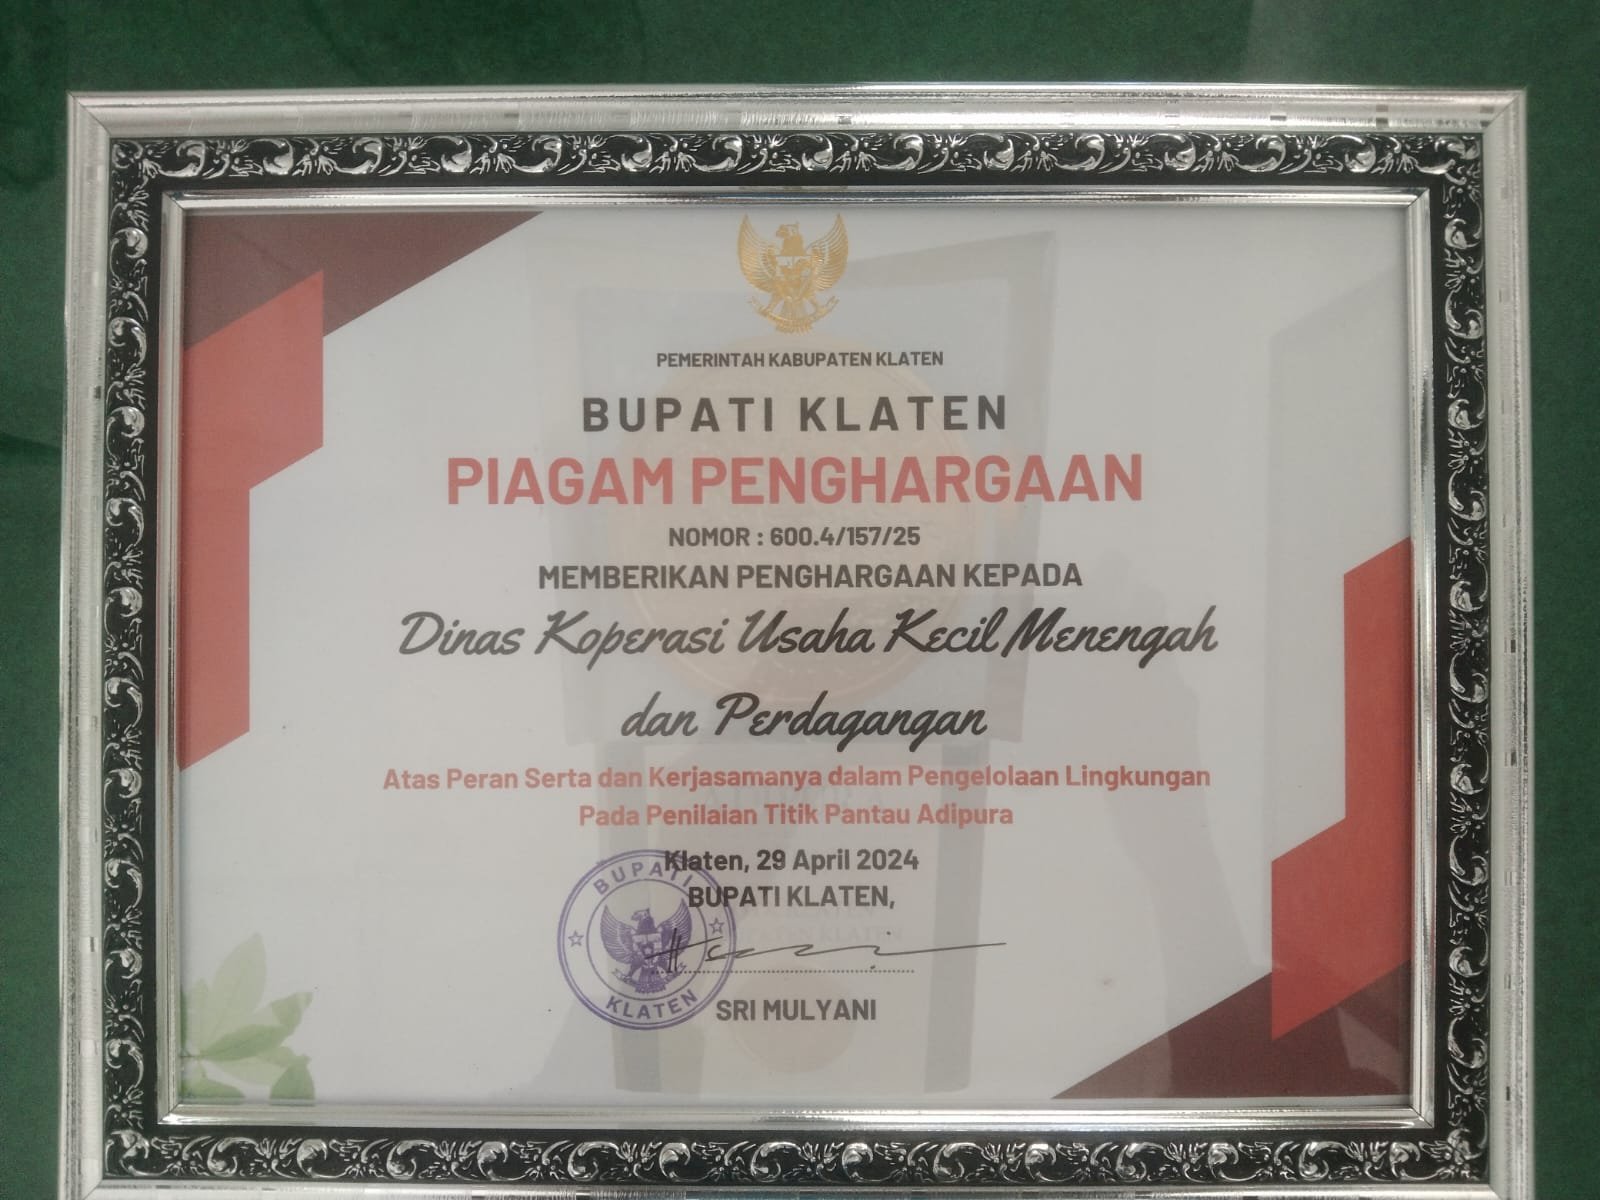 Dinas Koperasi Usaha Kecil Menengah dan Perdagangan Kabupaten Klaten (DKUKMP) menerima penghargaan dari Bupati Klaten